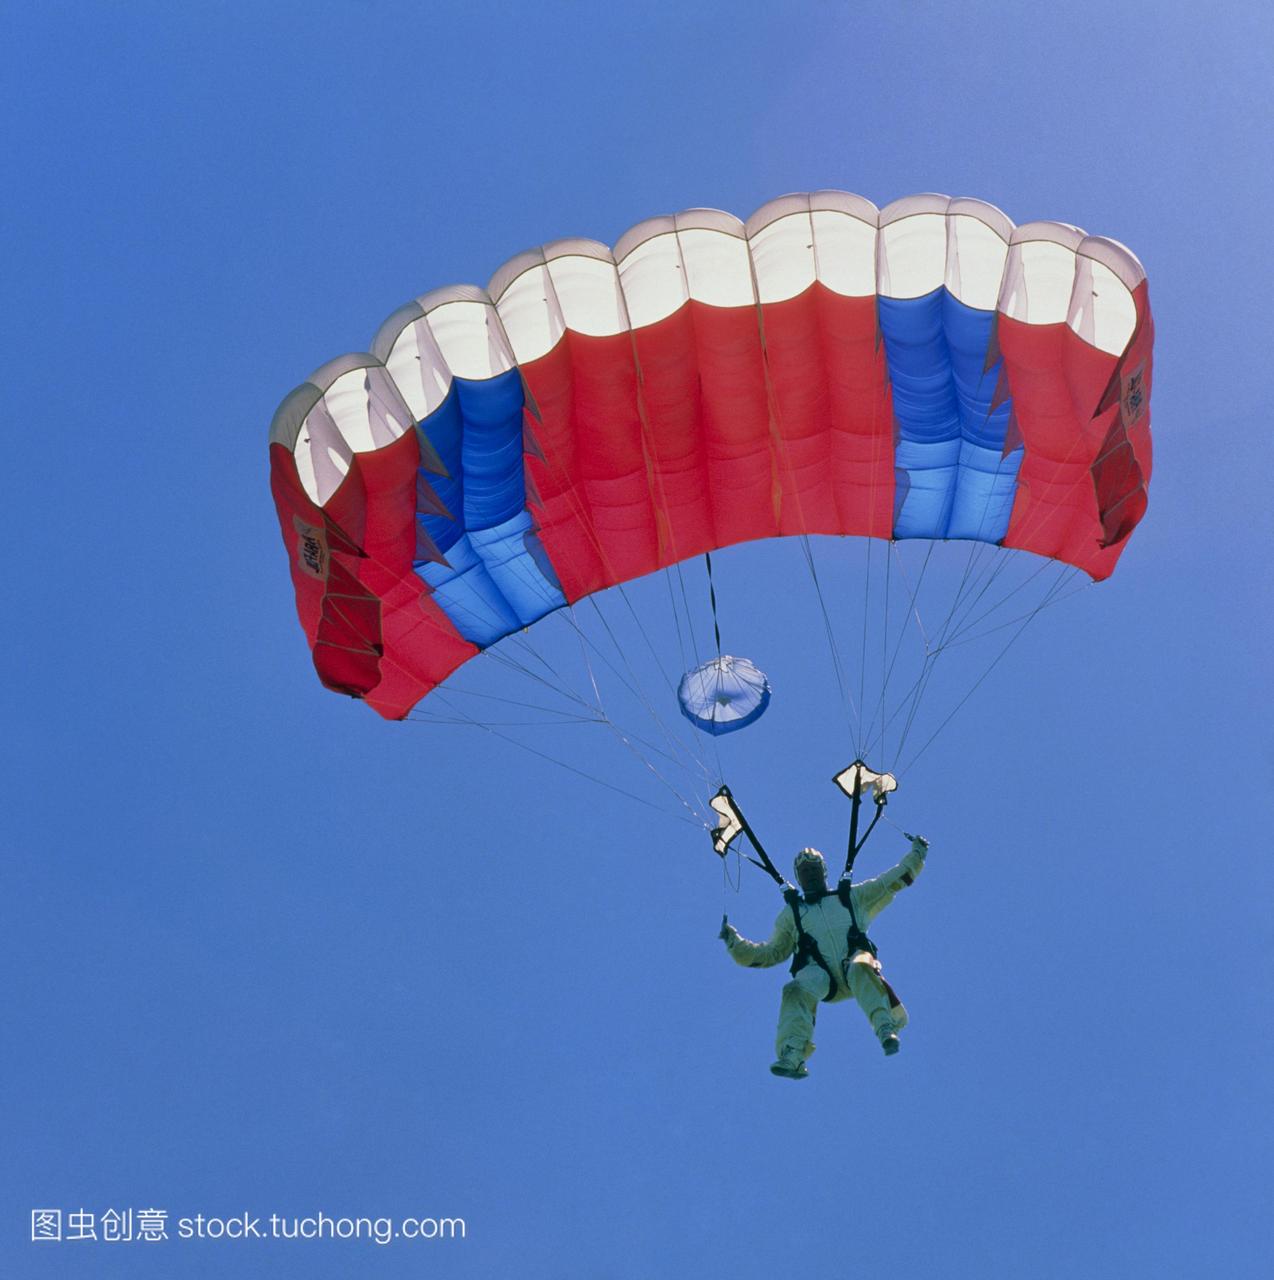 一张半空中的照片,是一名跳伞运动员在一架飞